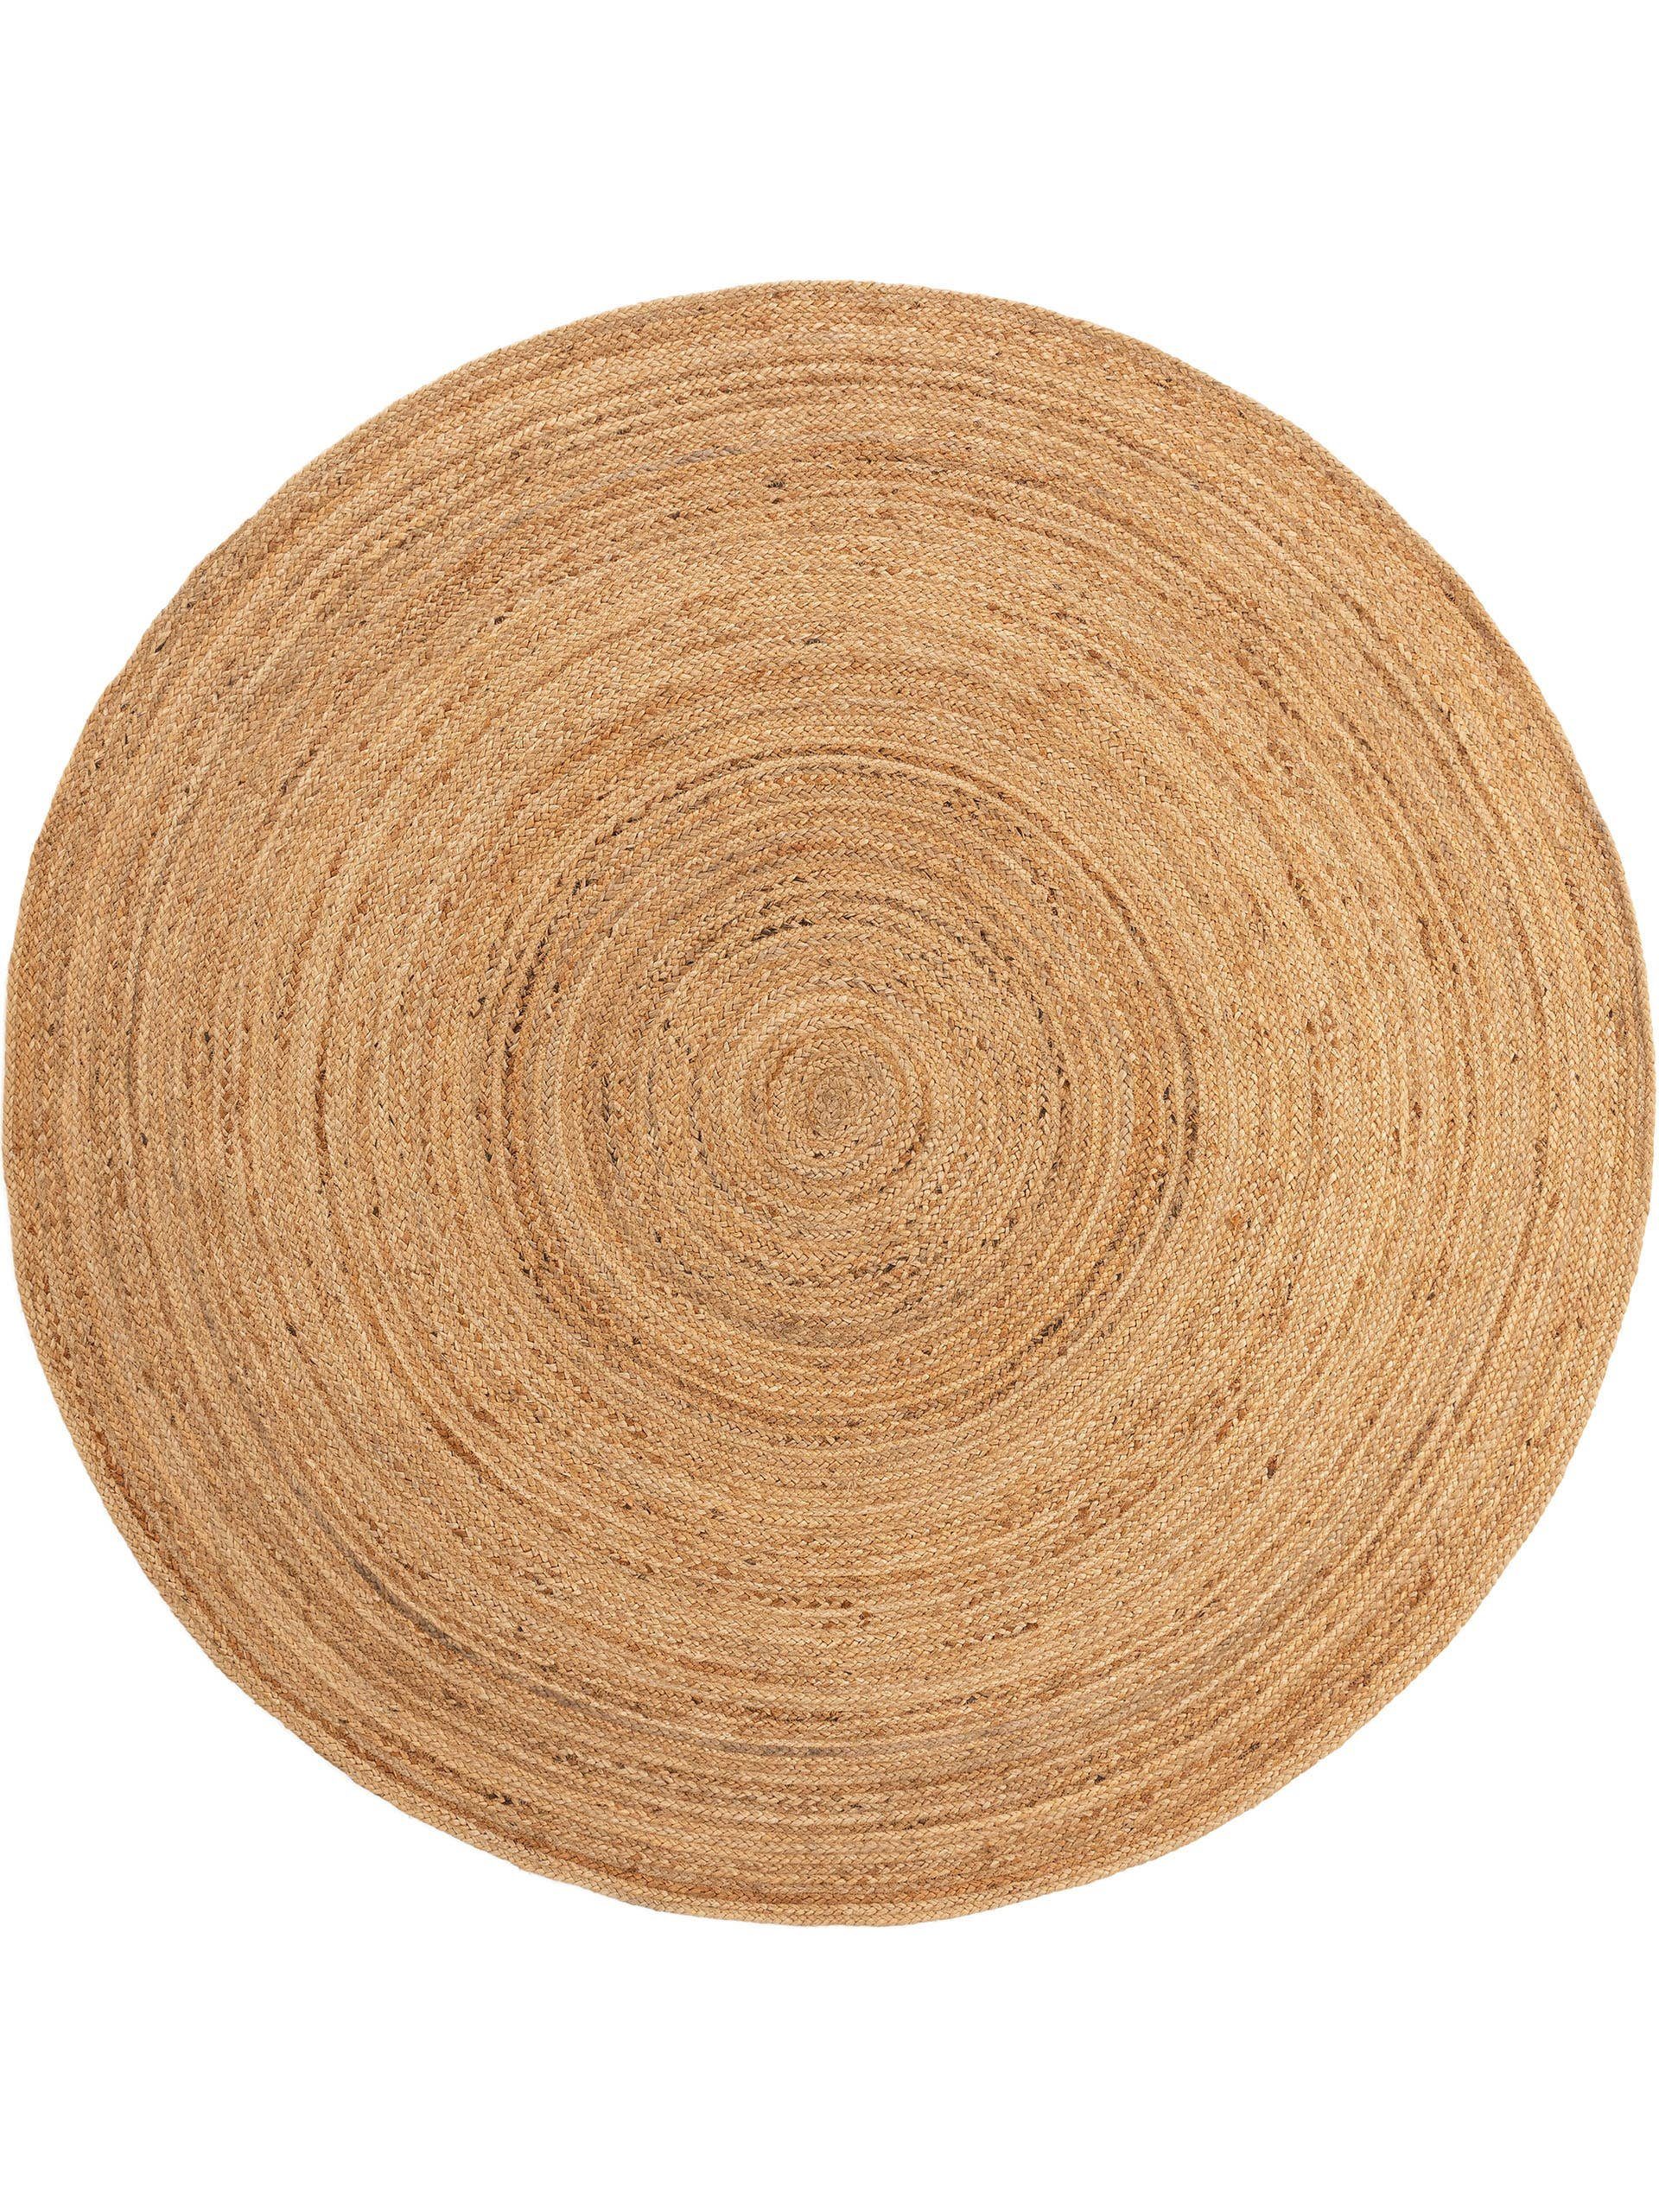 Teppich Jutta, benuta, rund, Höhe: 5 mm, 100% Jute, handgewebt, Uni, Natural Living, Wohnzimmer